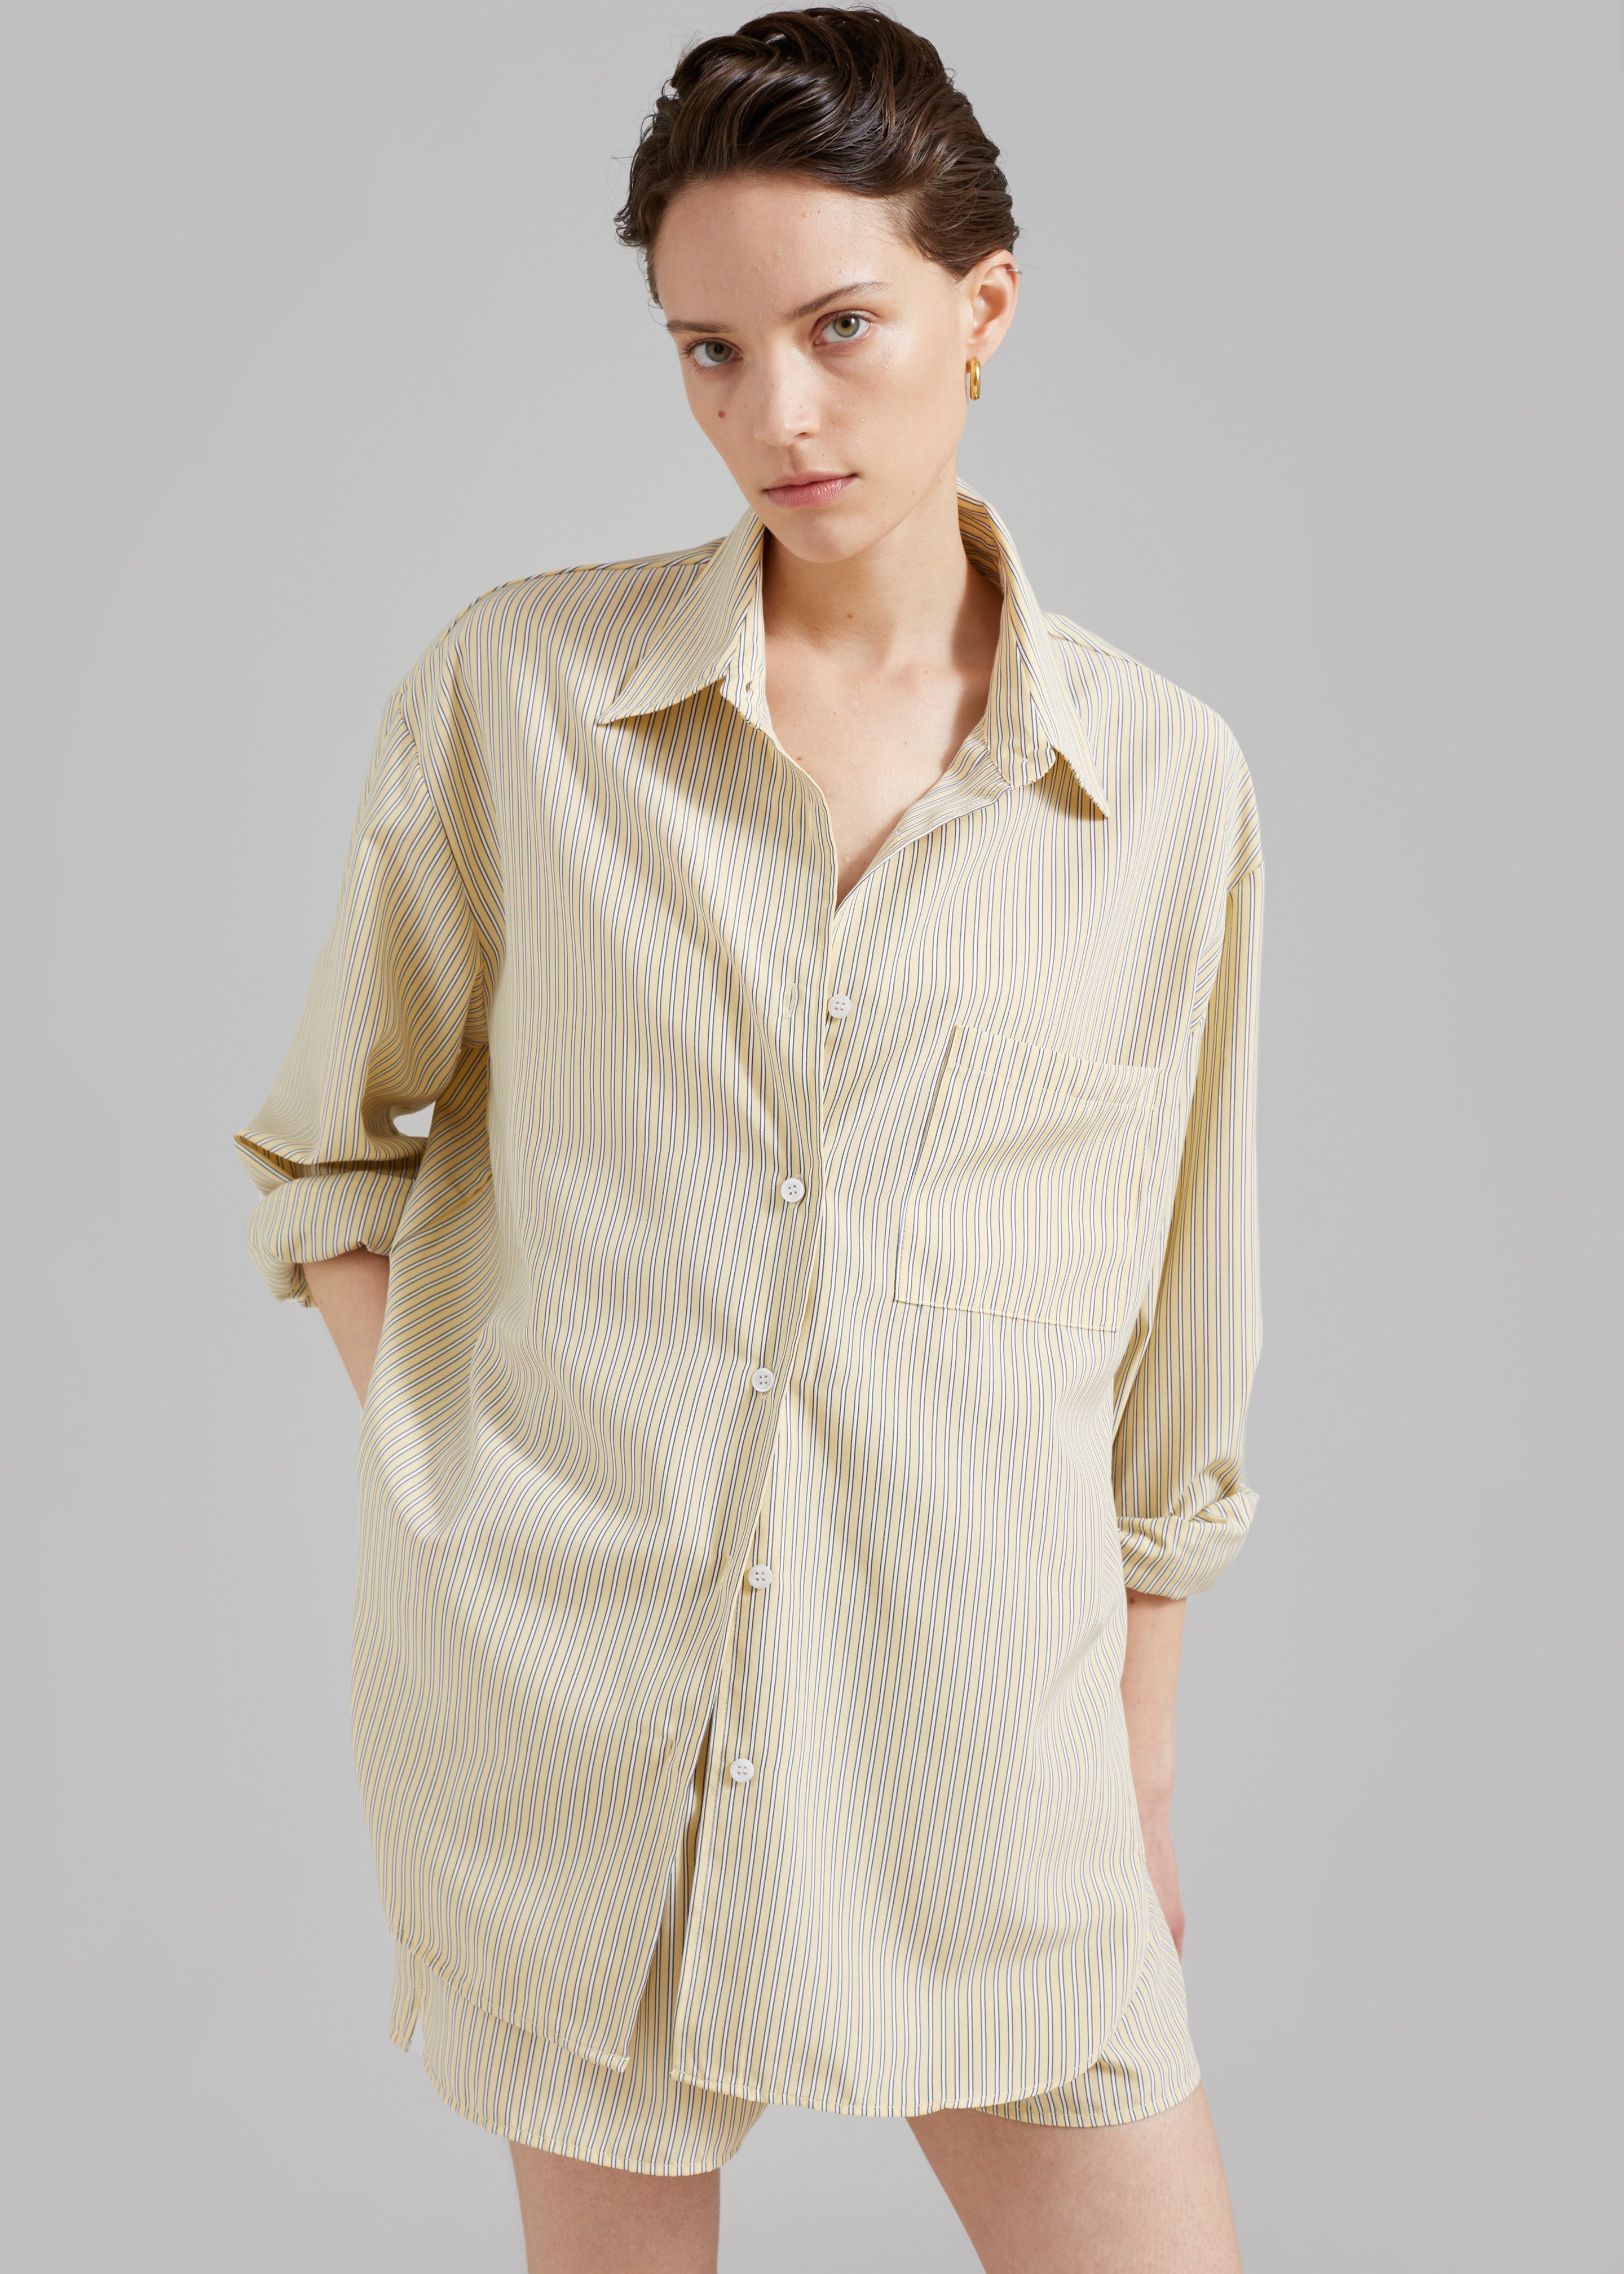 Lui Oxford Shirt - Pale Yellow/Black Stripe - 1